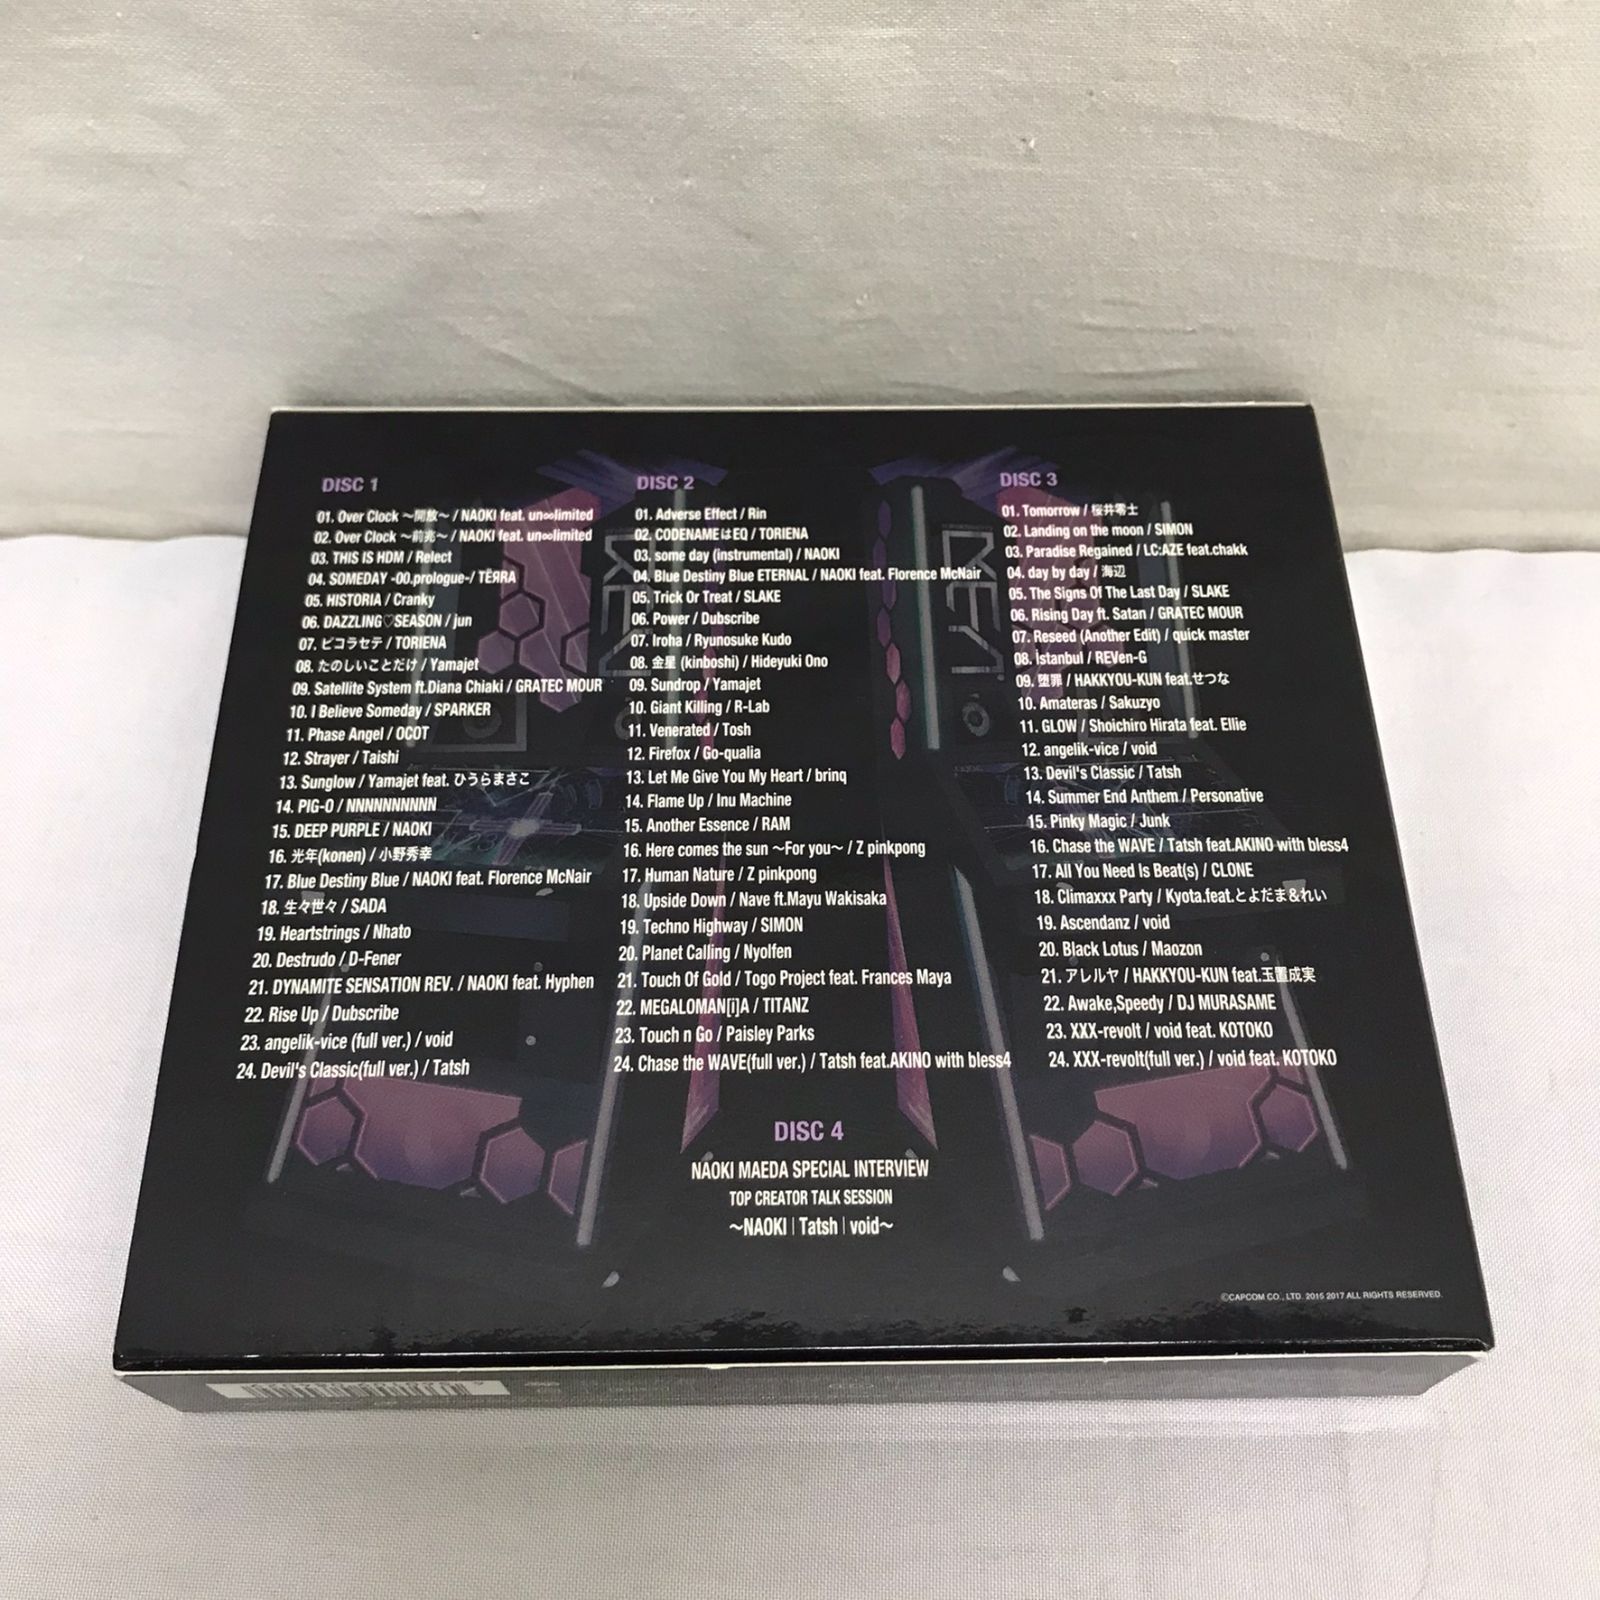 「クロスビーツ・オリジナルサウンドトラックCD」~crossbeats REV. シリーズ・セレクション~プレミアムBOX (初回生産限定盤)  [CD] OST Being